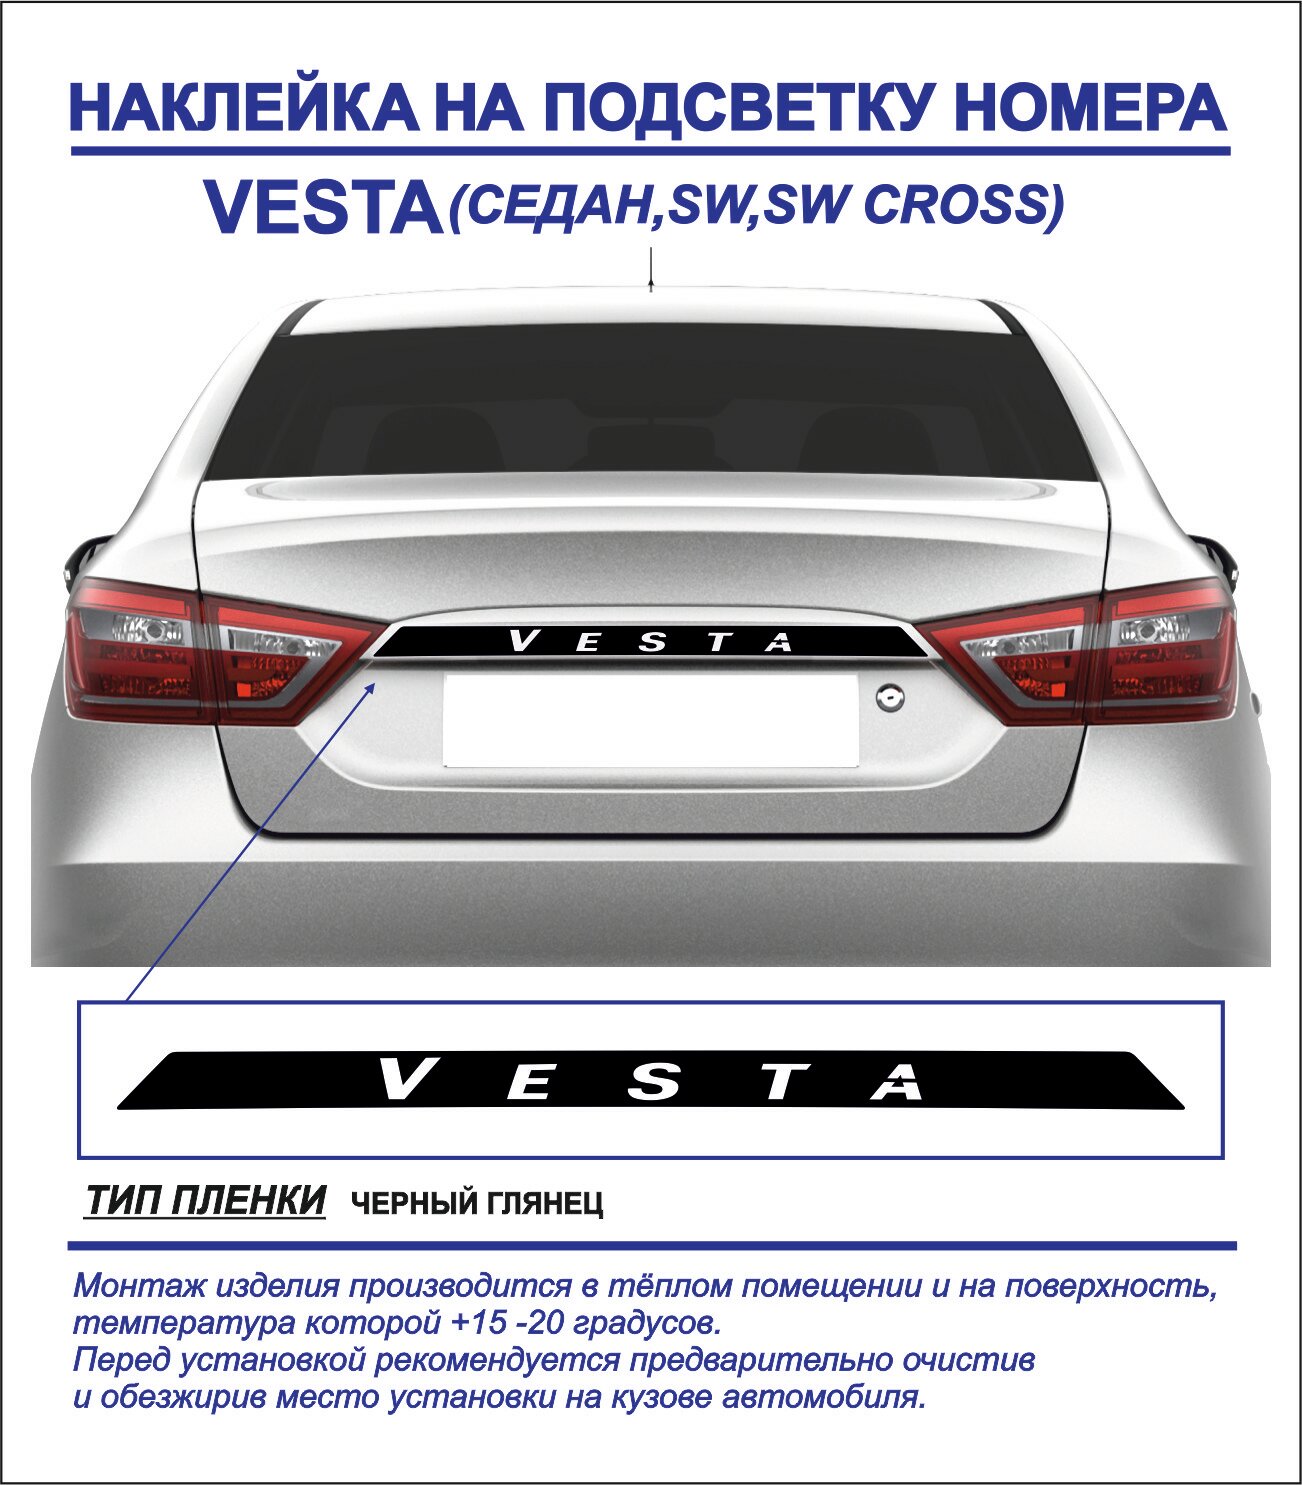 Наклейка, тюнинг на подсветку номера Lada Vesta седан, sw, sw cross (черный глянец) 1шт.